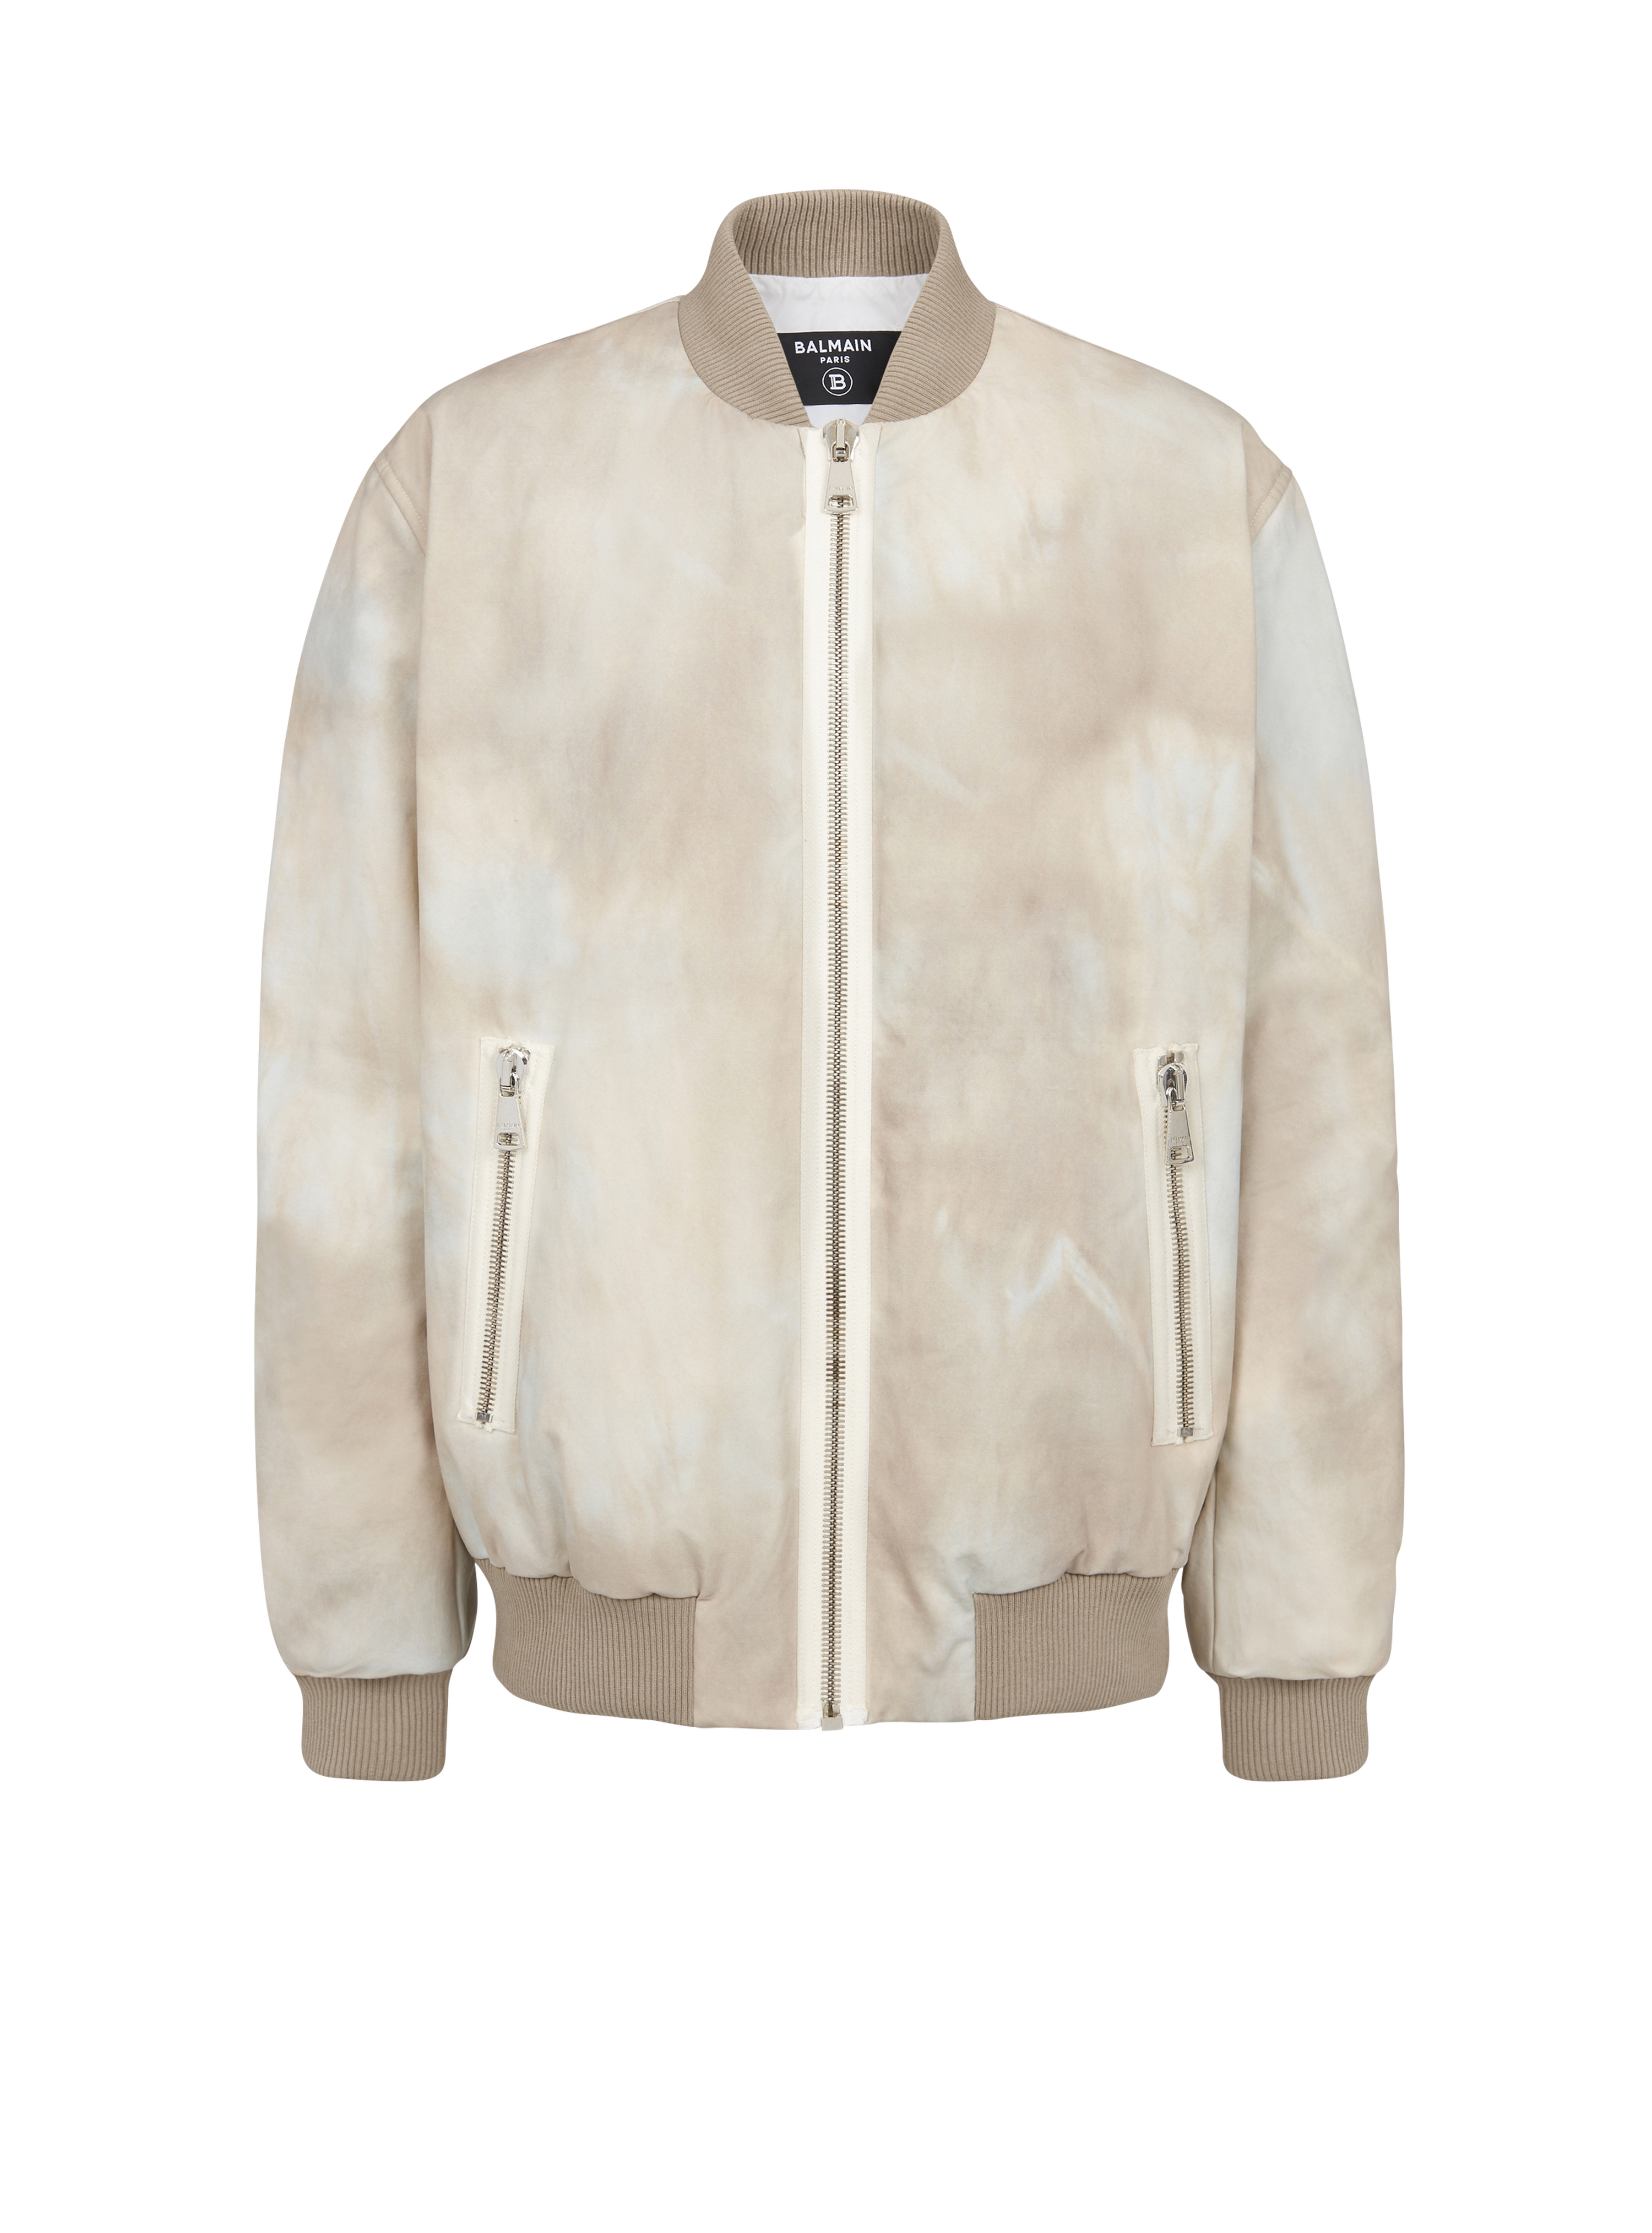 Desert print cotton bomber jacket, white